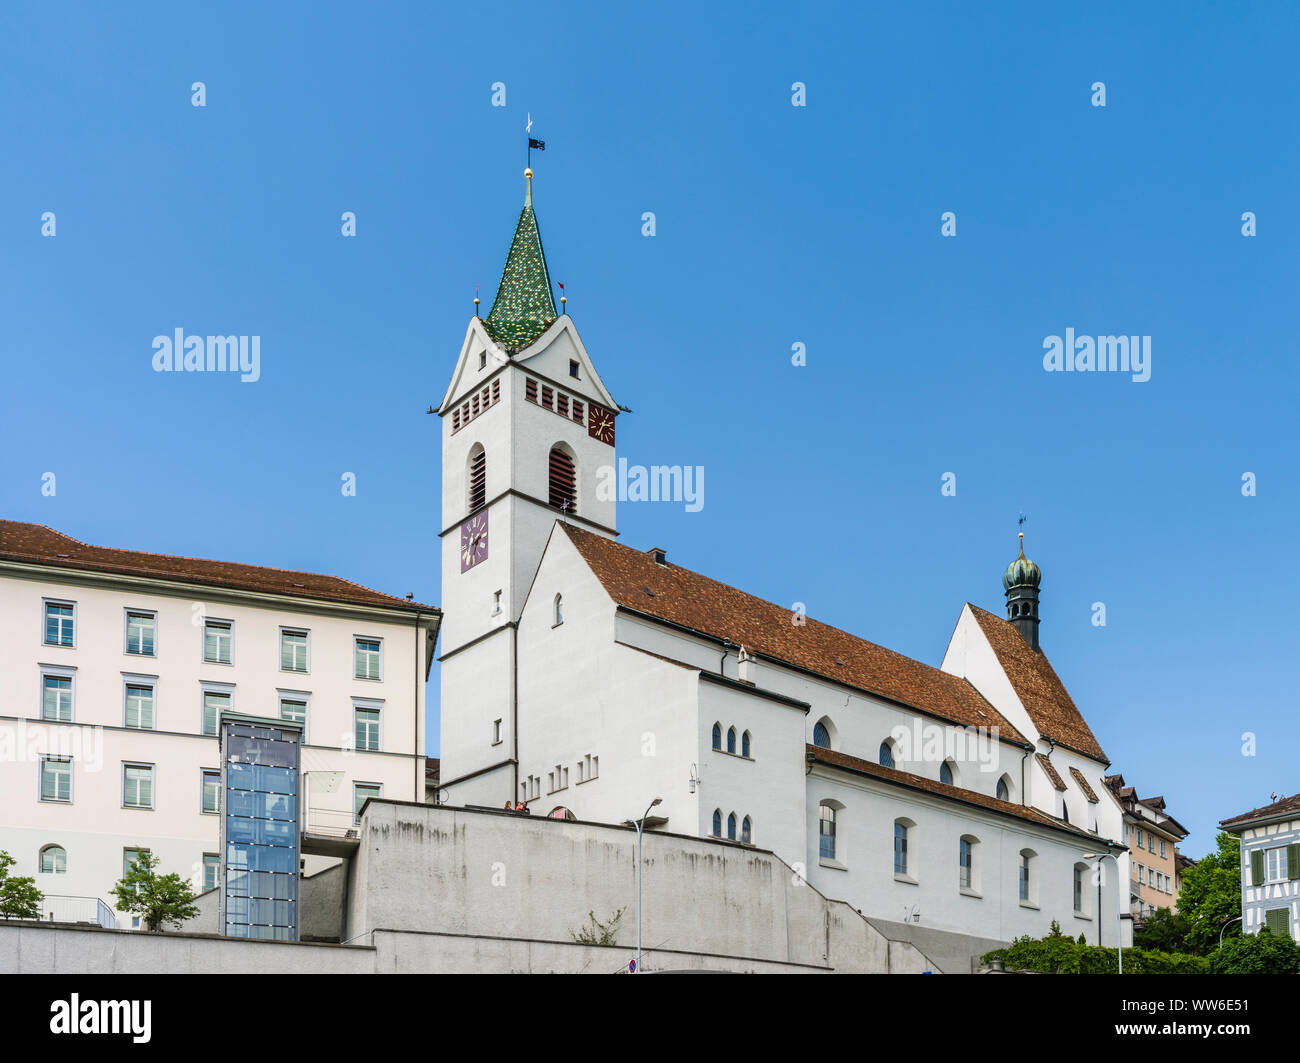 St. Nicholas Church in Wil, St. Gallen Stock Photo